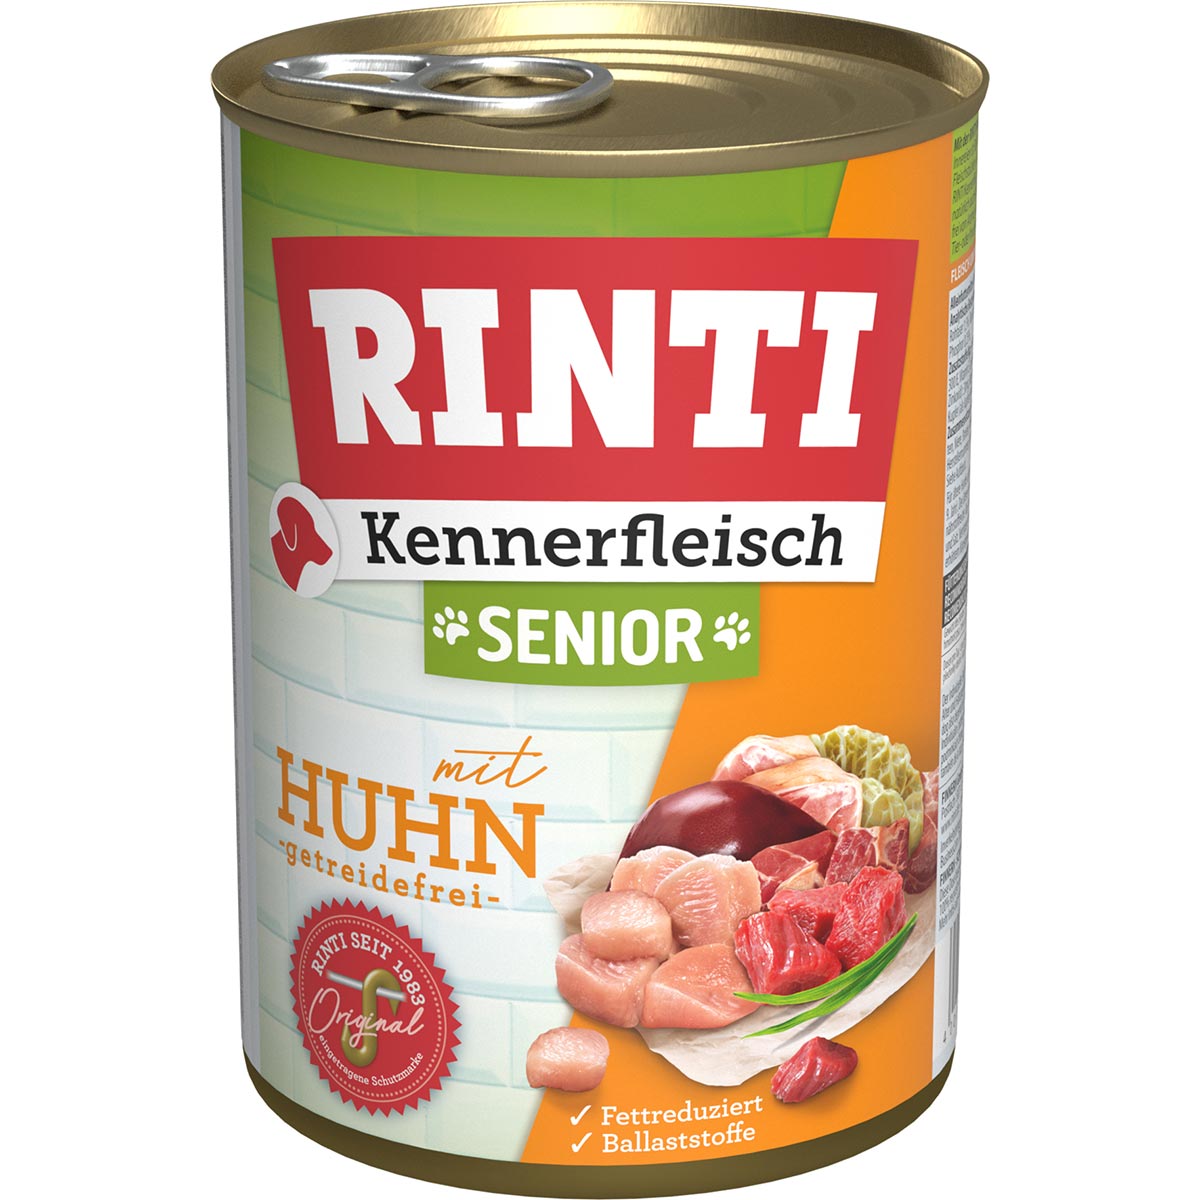 Rinti Kennerfleisch Senior mit Huhn gf